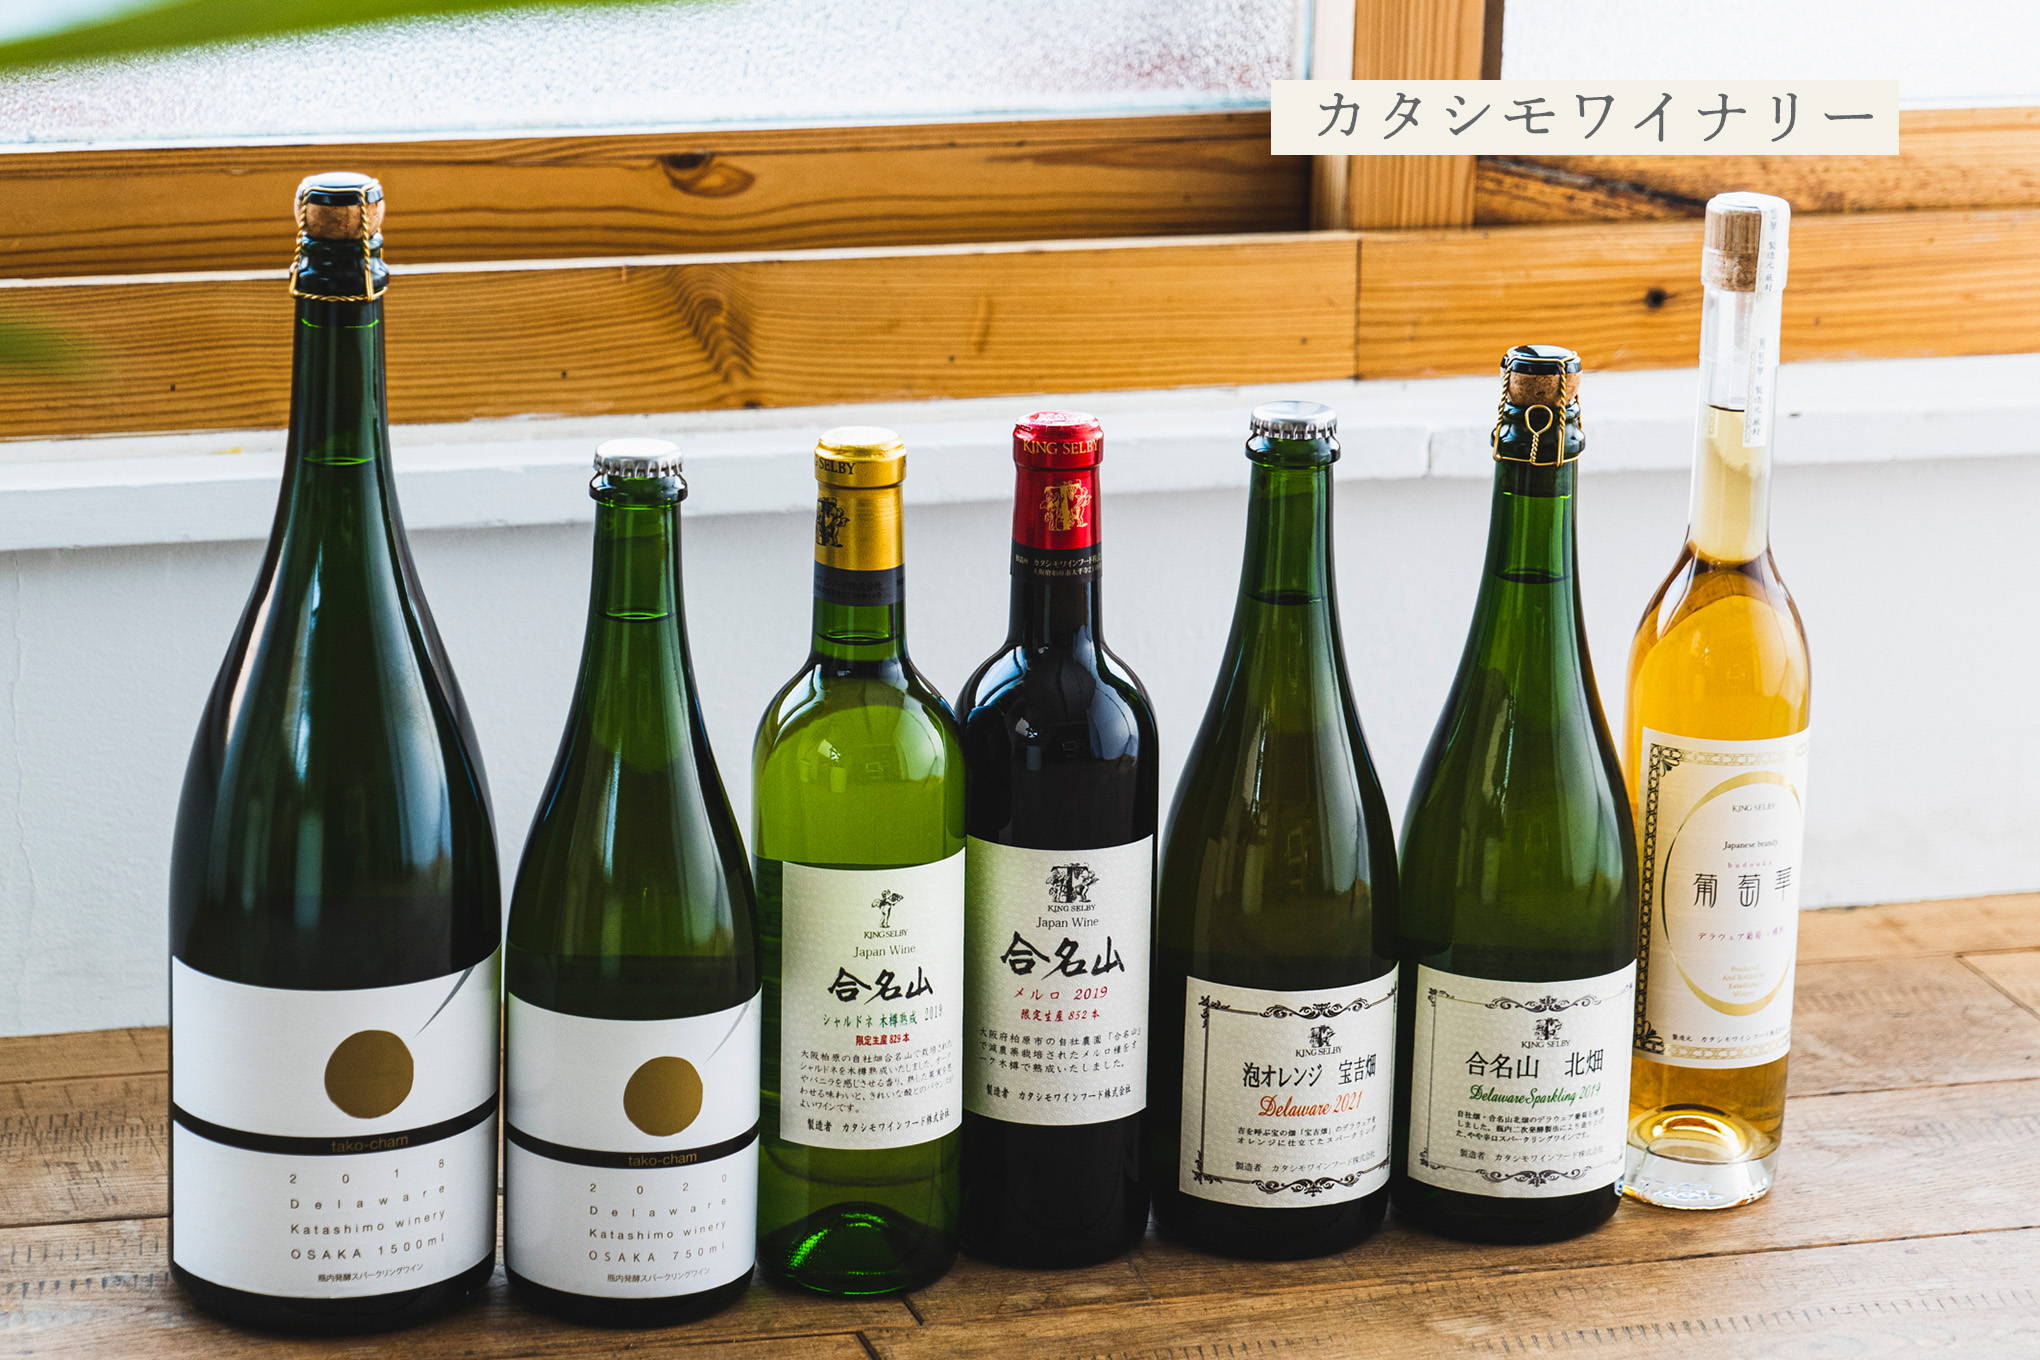 たこ焼きに合わせるワイン？ 大阪のワインの代名詞として親しまれている老舗中の老舗は、新しい挑戦も忘れない『カタシモワイナリー』。